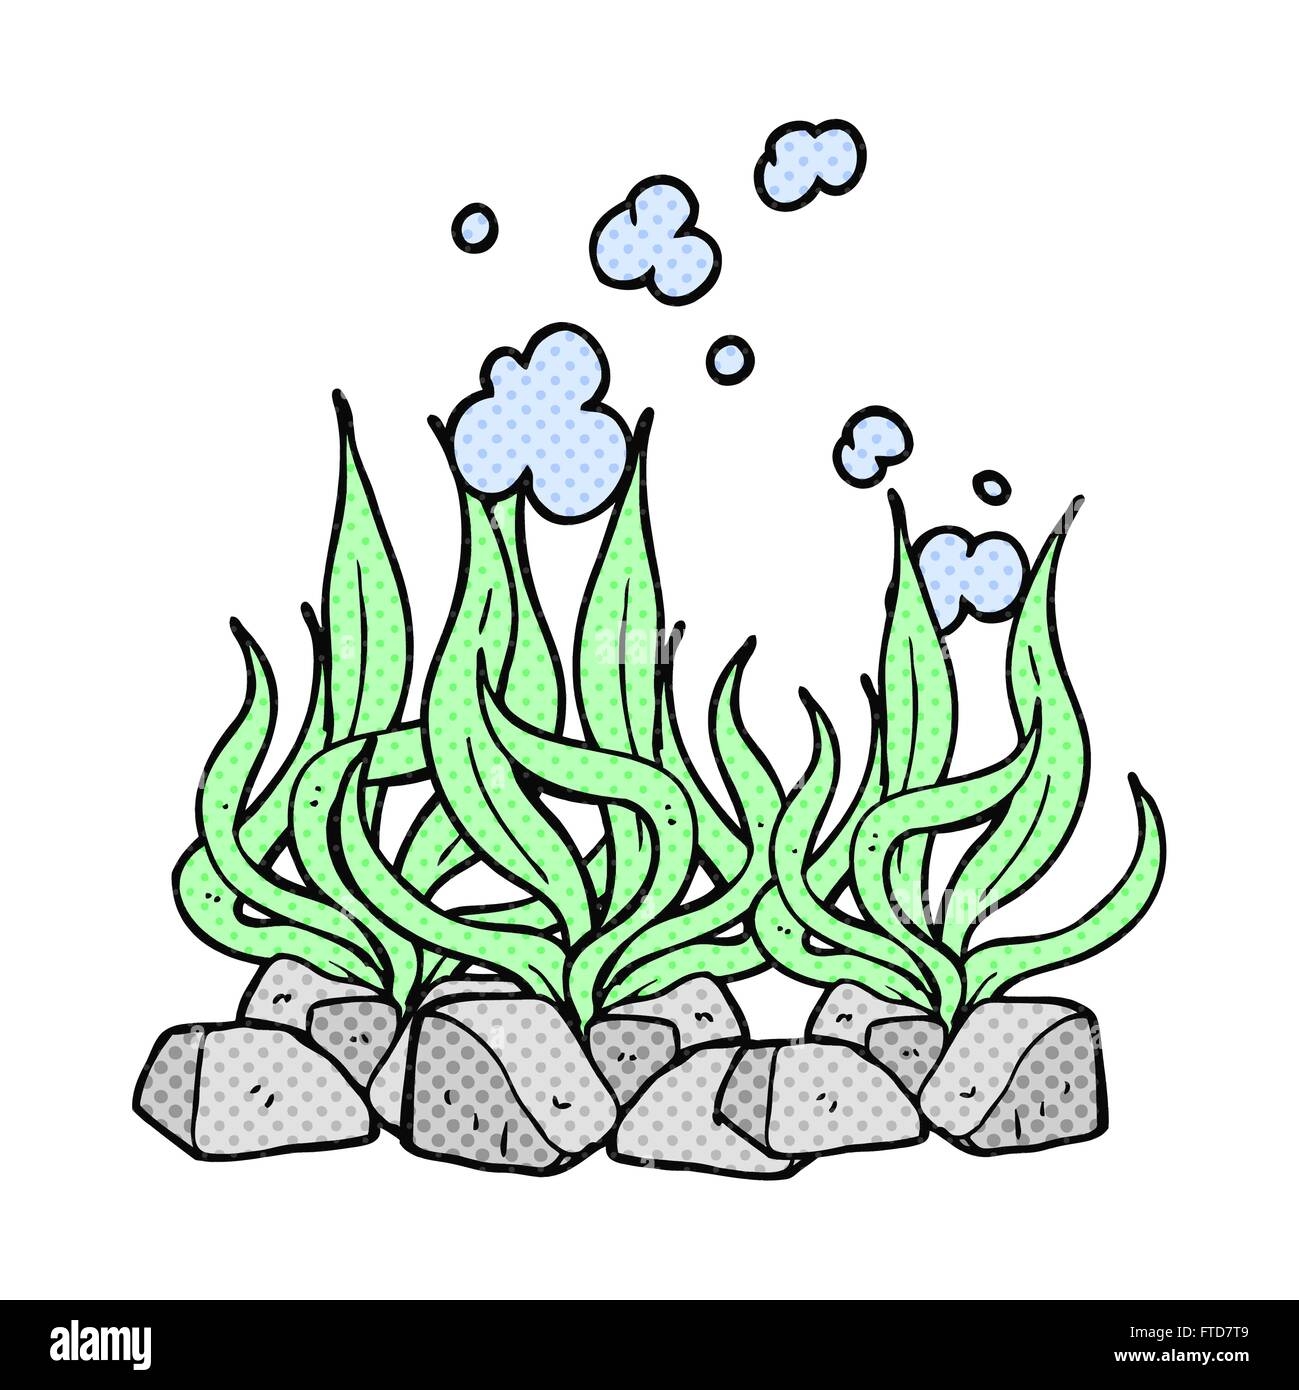 Раскраска водоросли для аквариума